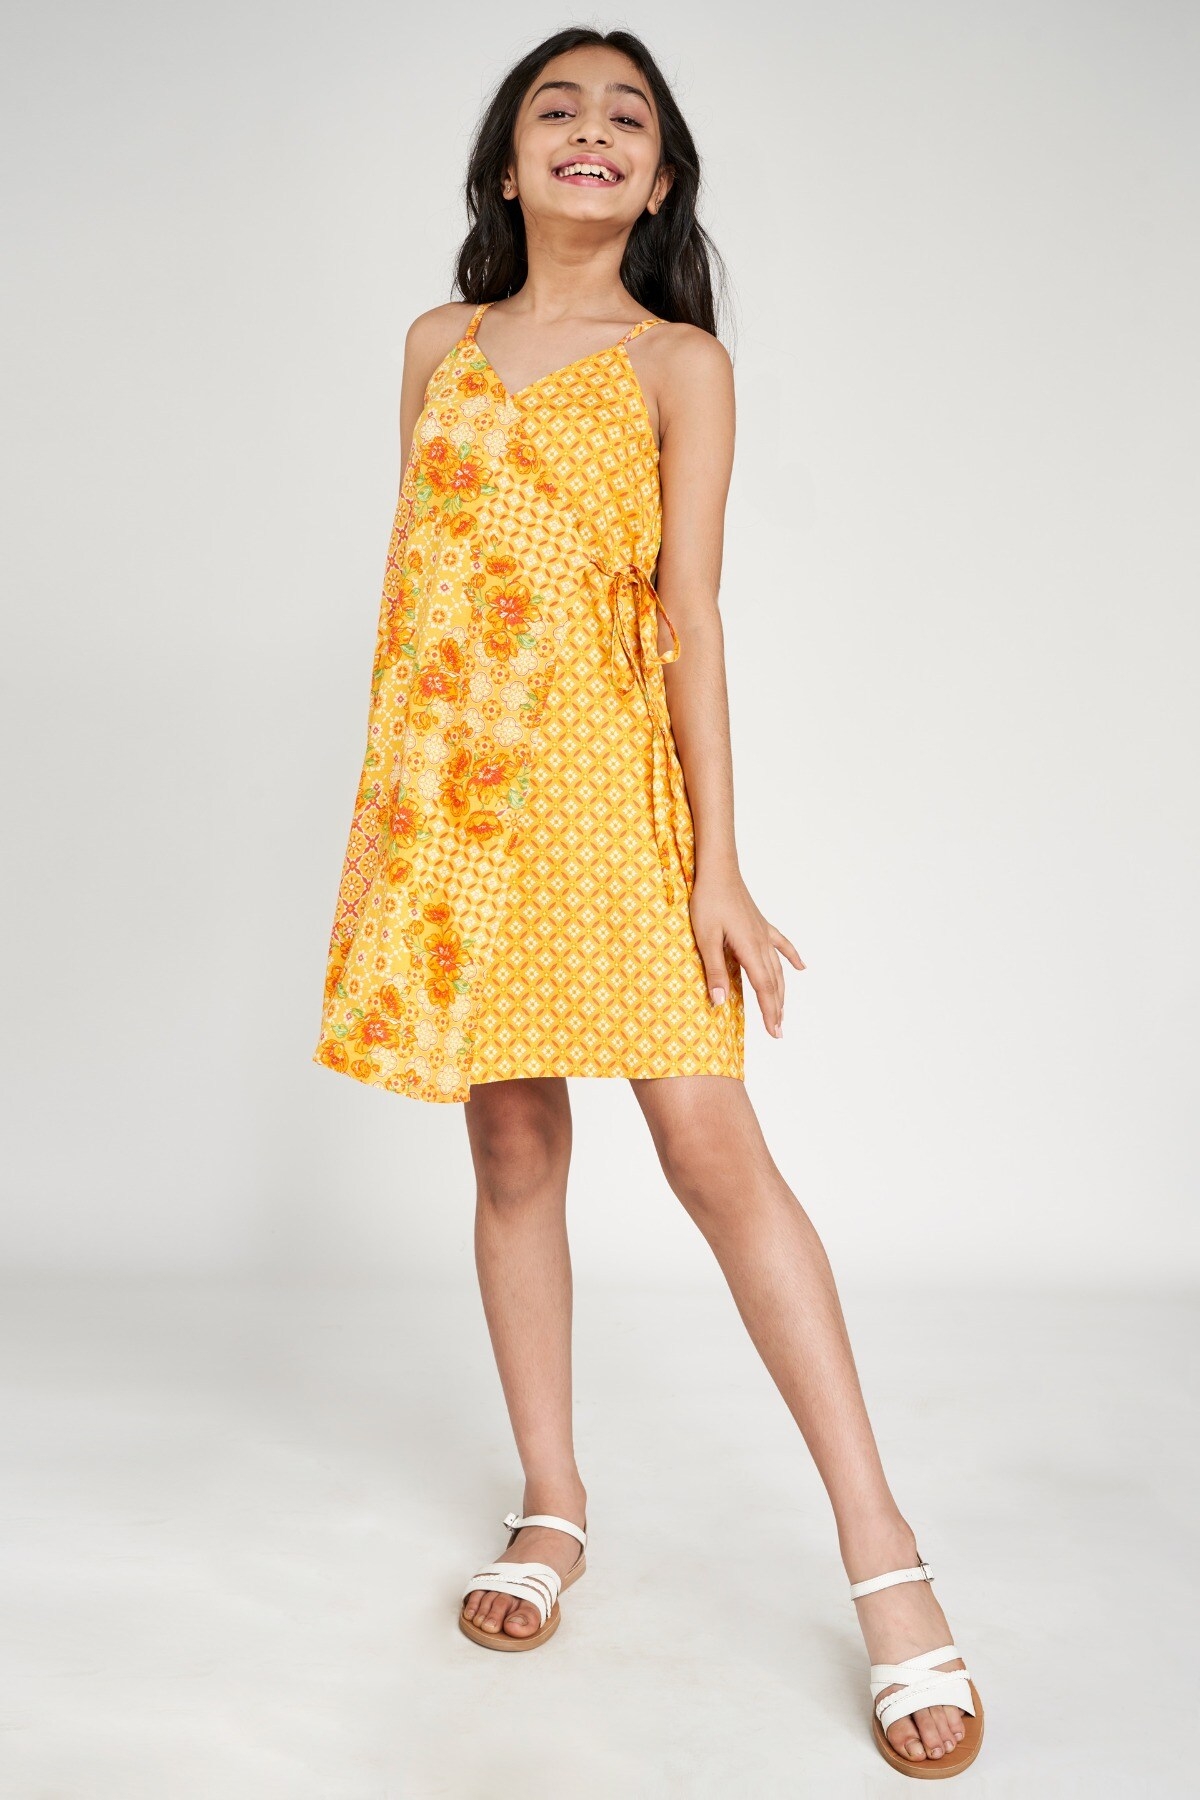 Global Desi | Orange Floral Printed A-Line Dress 0